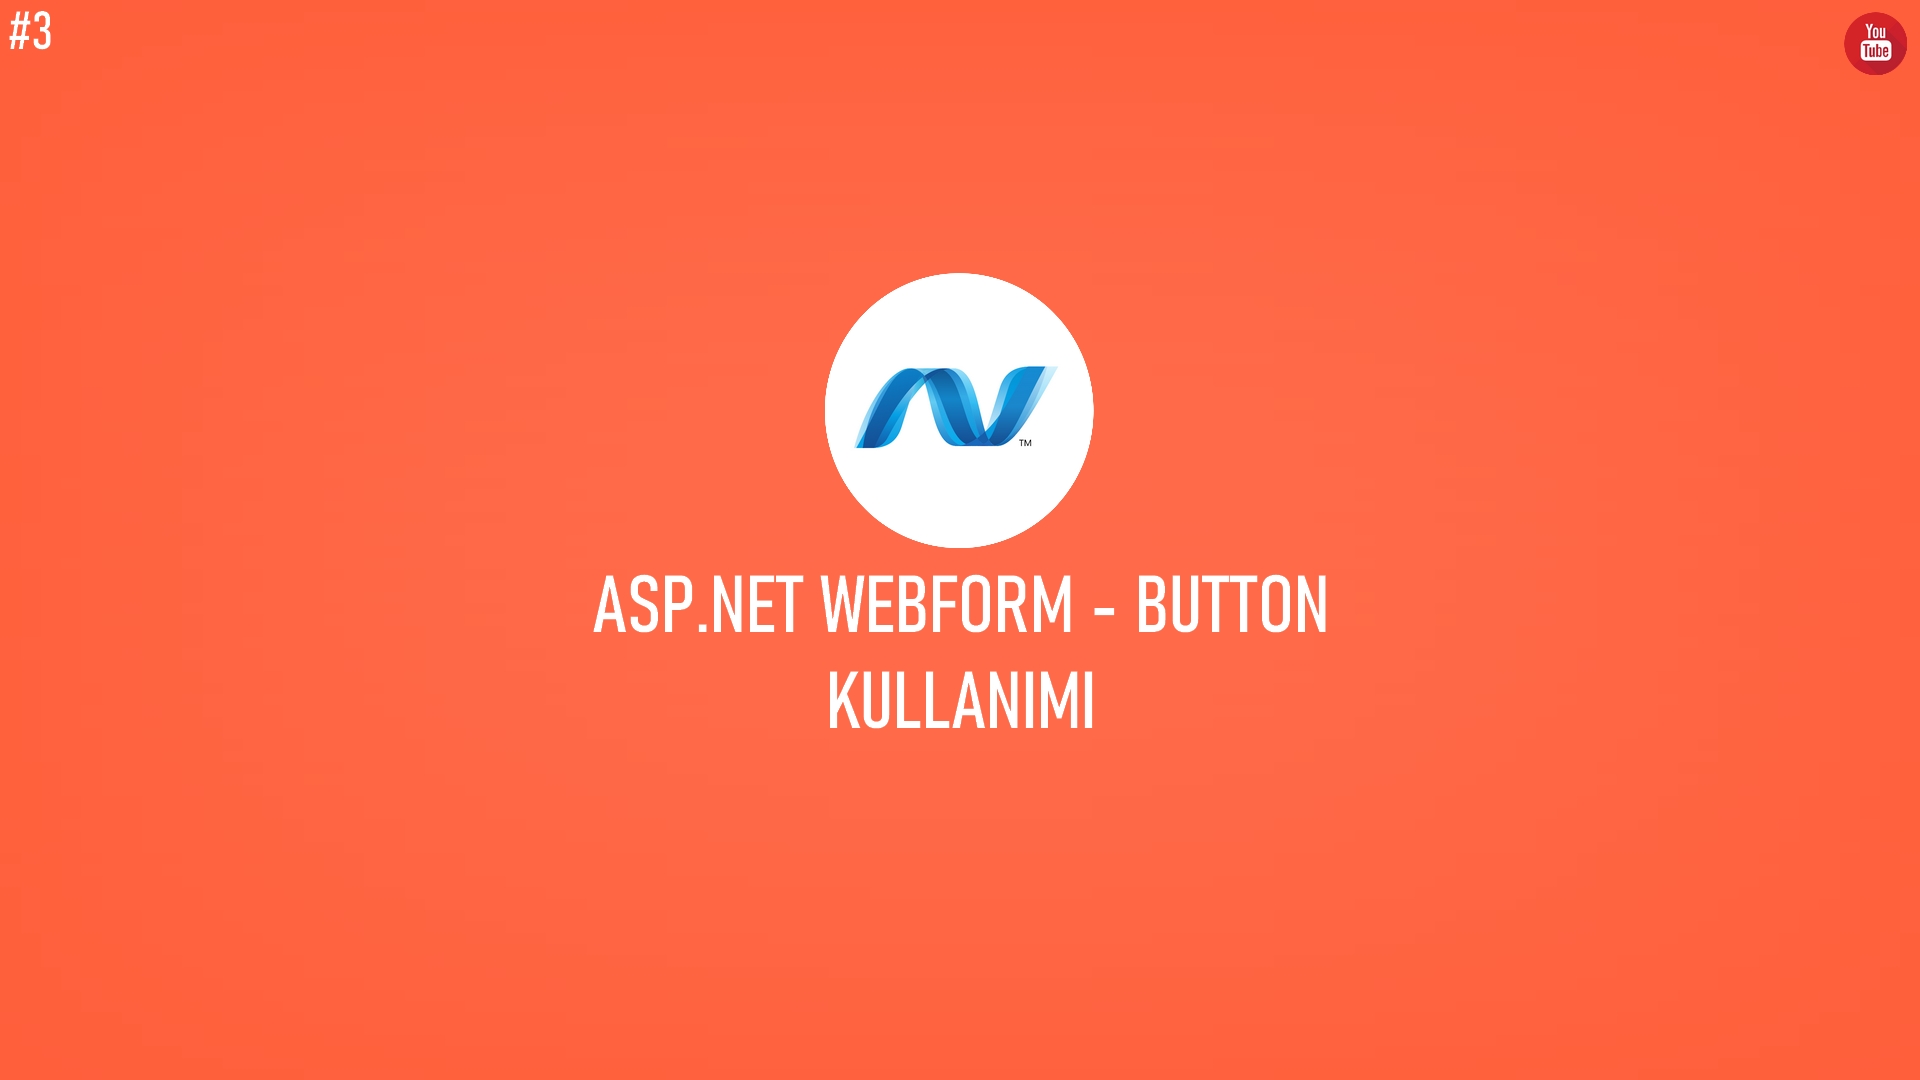 C# ASP.NET WebForm - Button Kullanımı (Video İçerik) başlıklı içeriğin resmi